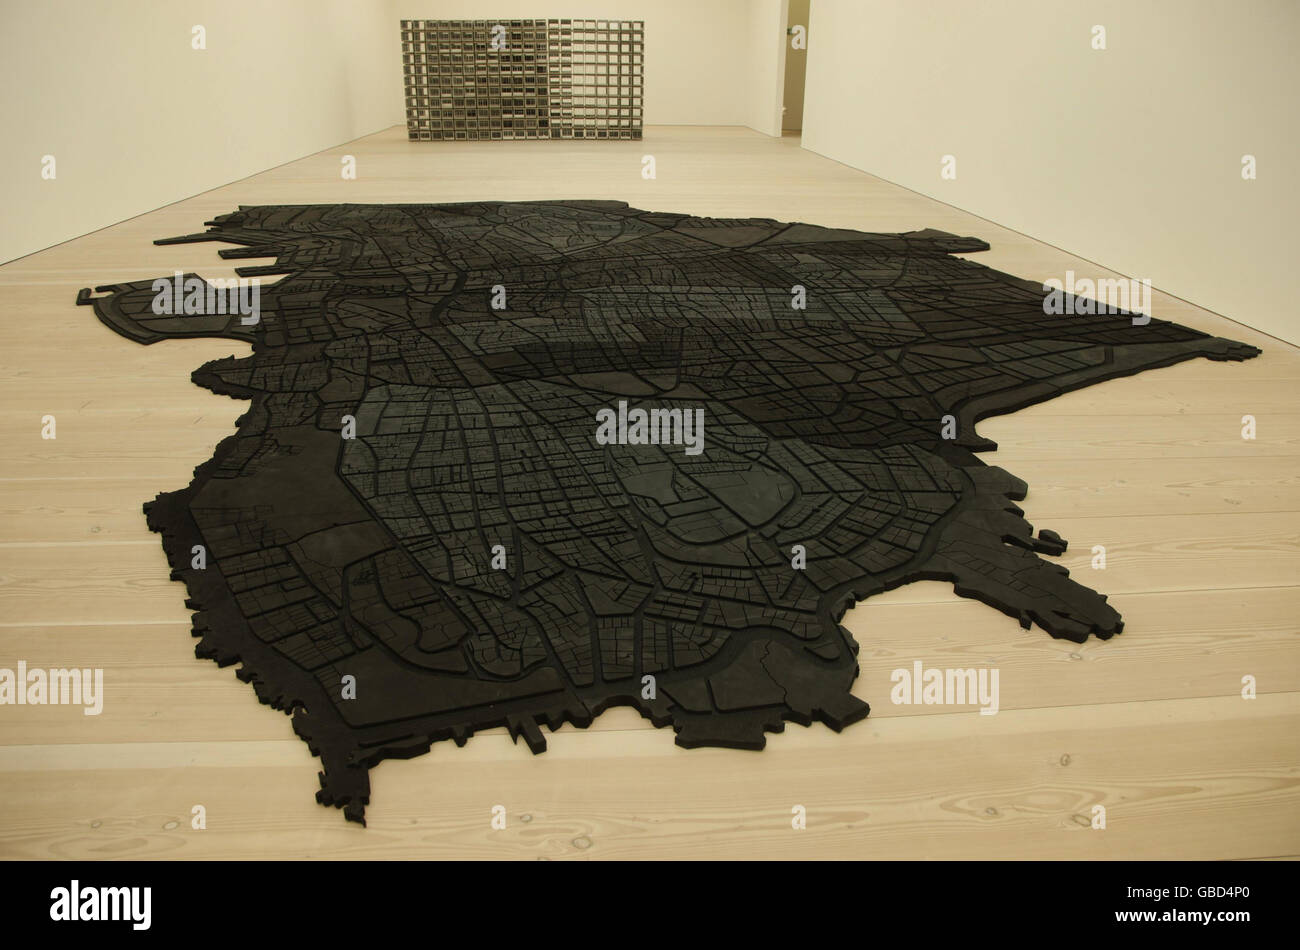 Beirut Caoutchouc, un grande tappetino in gomma nera a forma di mappa corrente di Beirut, dell'artista Marwan Rechmaoui alla Saatchi Gallery di Londra, che fa parte della mostra della galleria presentata: New Art from the Middle East. Foto Stock